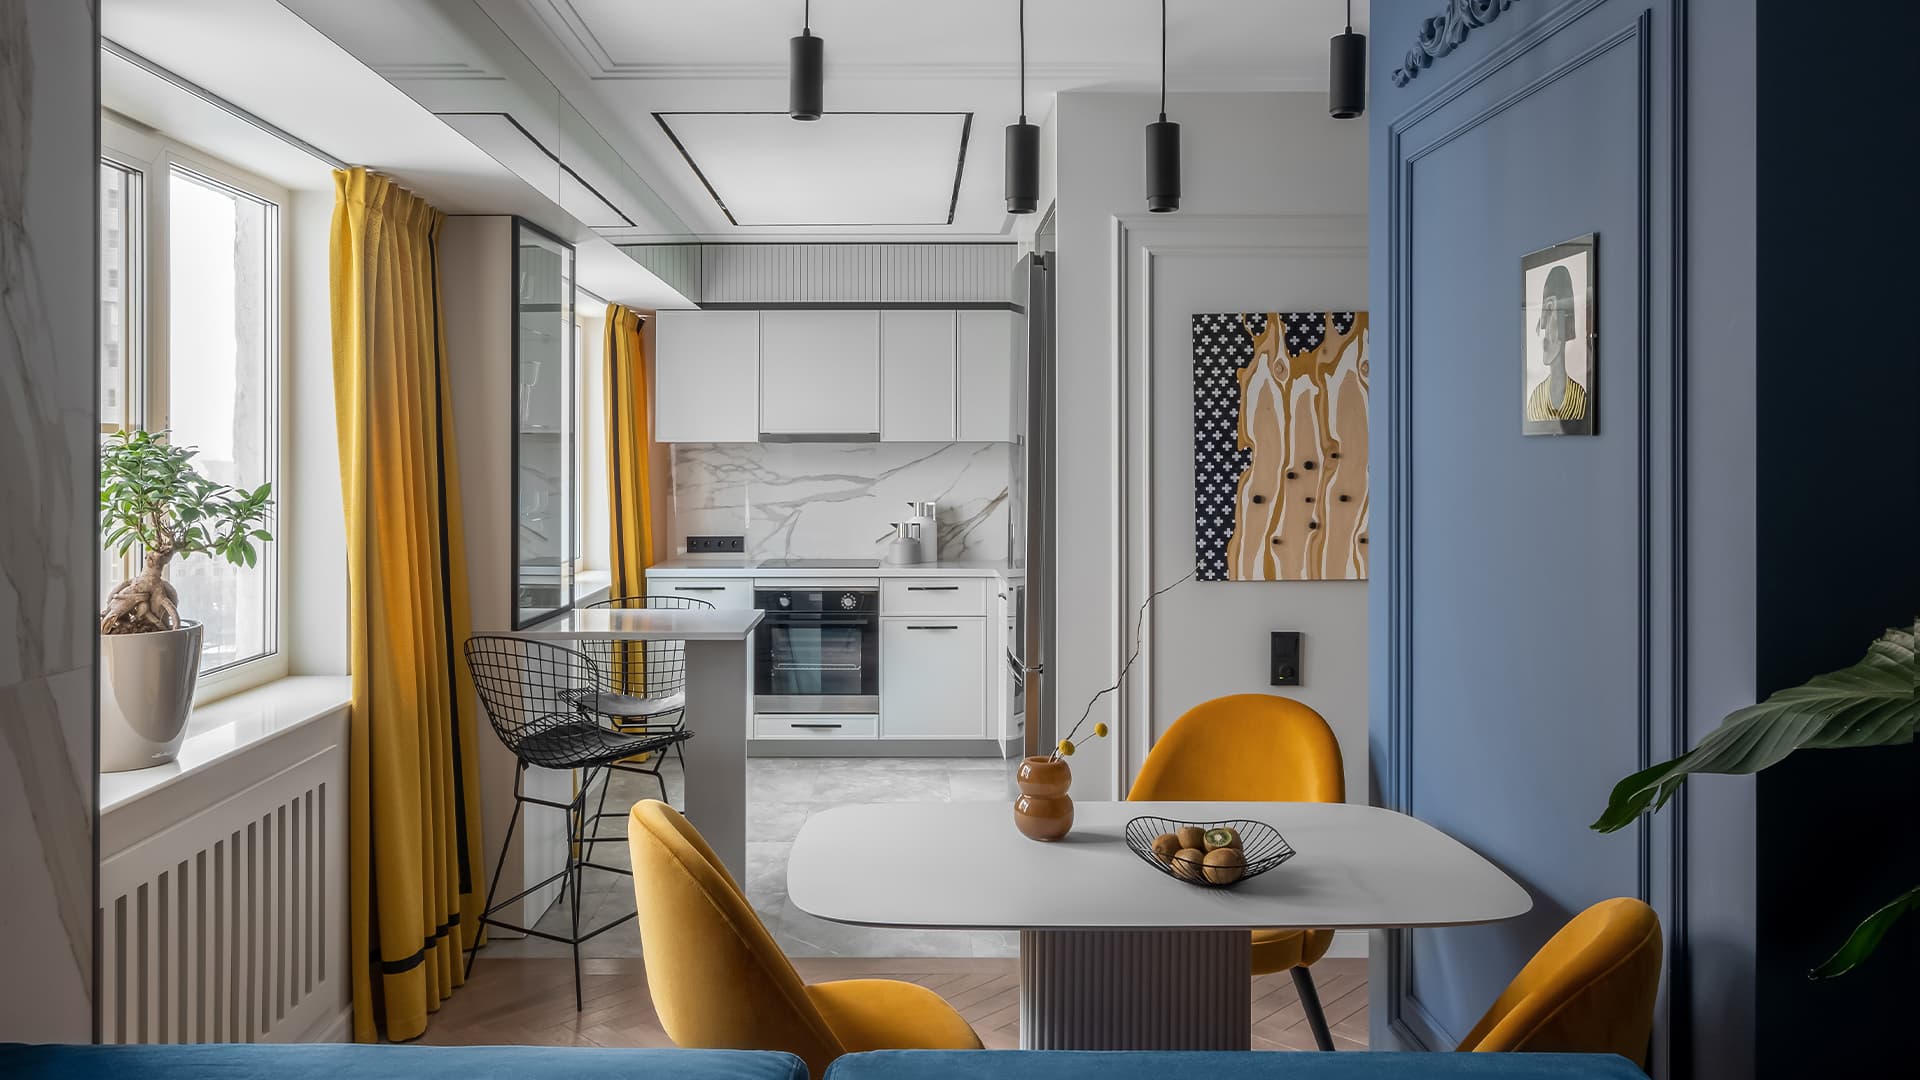 Трансформация типовой квартиры в яркий дом с нестандартным интерьером — проект Марии Ничипоренко